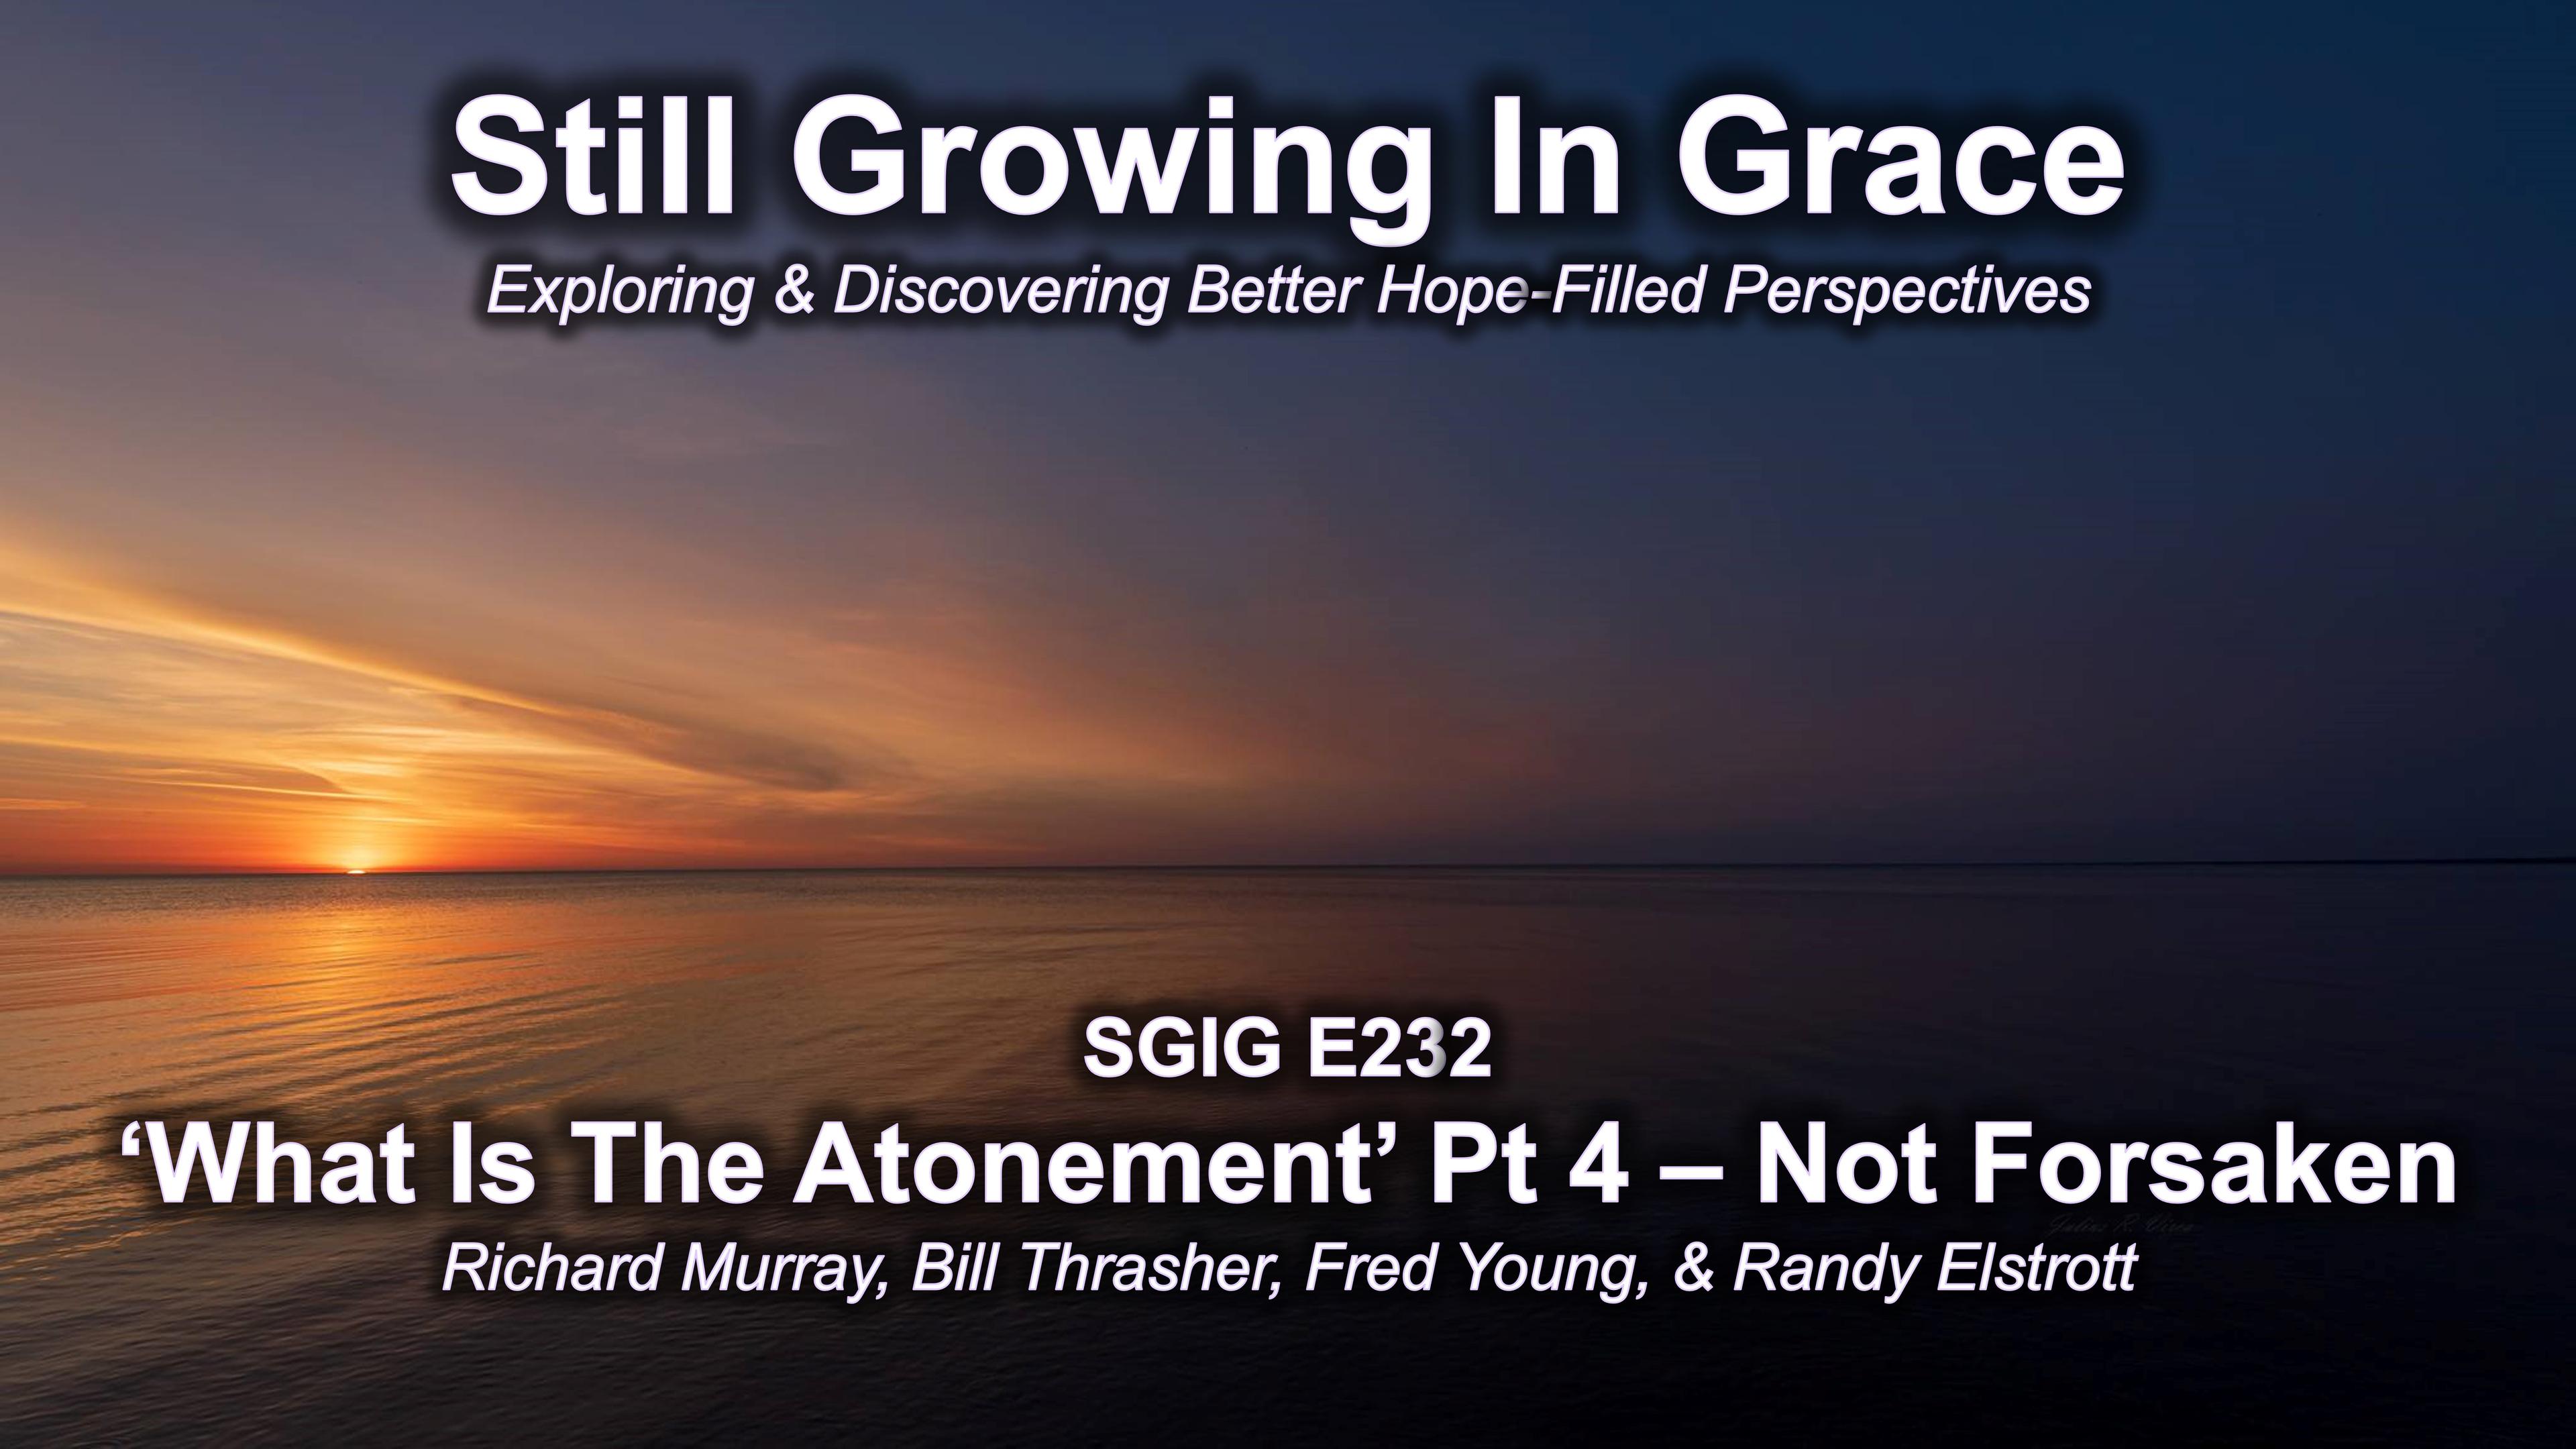 SGIG E232 What Is Atonement Pt 4 – Not Forsaken?